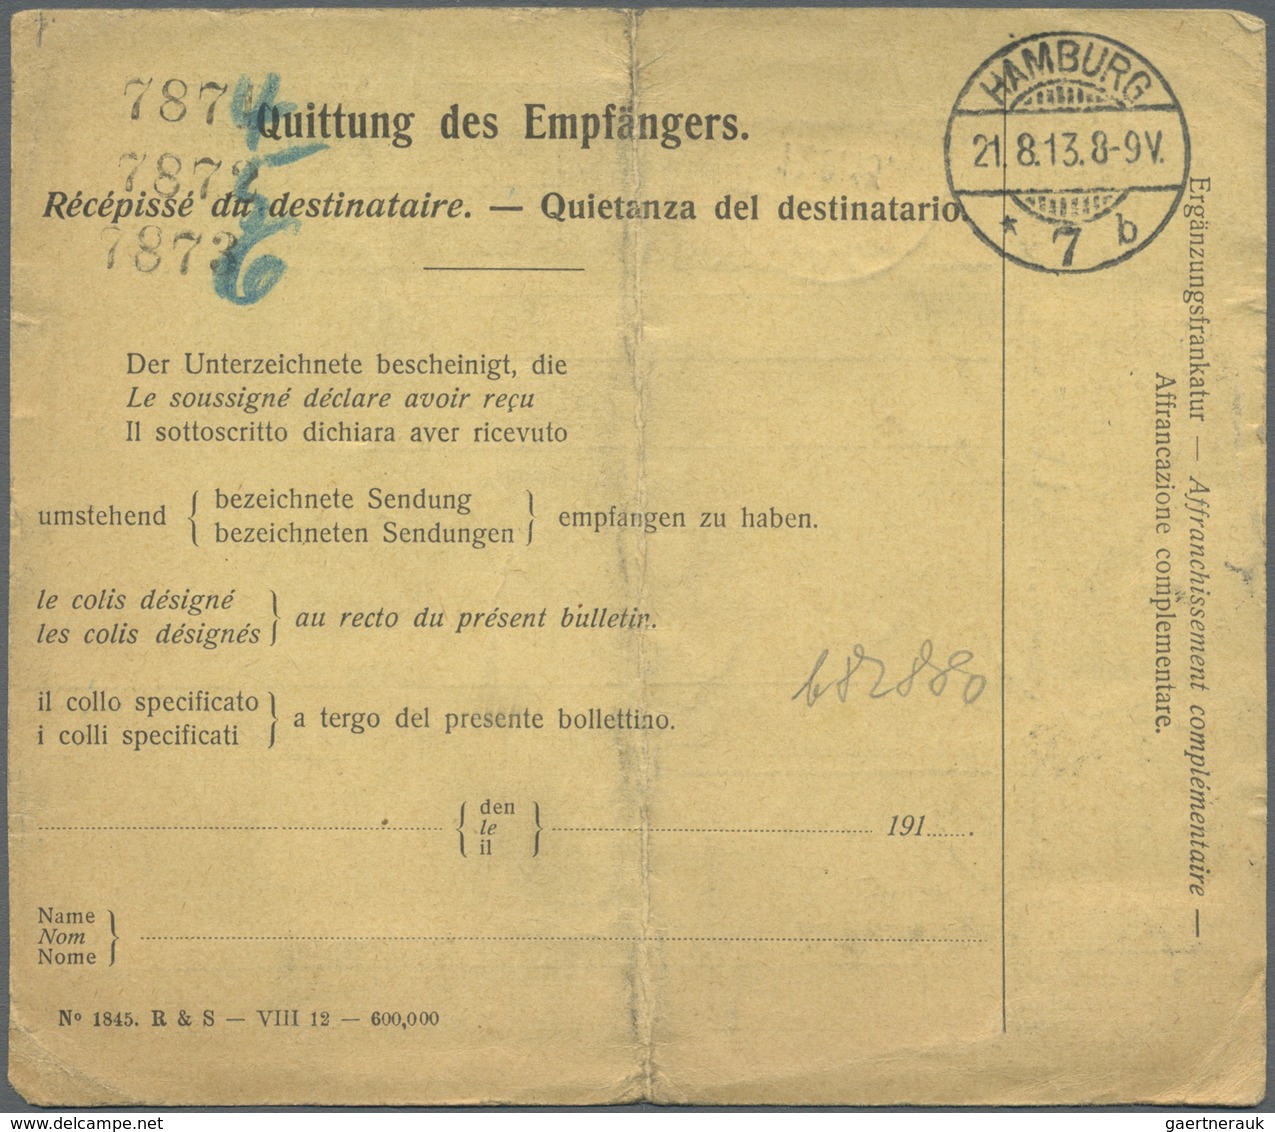 Br Schweiz:  1913: Postpaketadresse über 3 Pakete Von Mannedorf (Schweiz) An Die Basler Missionshandlun - Neufs